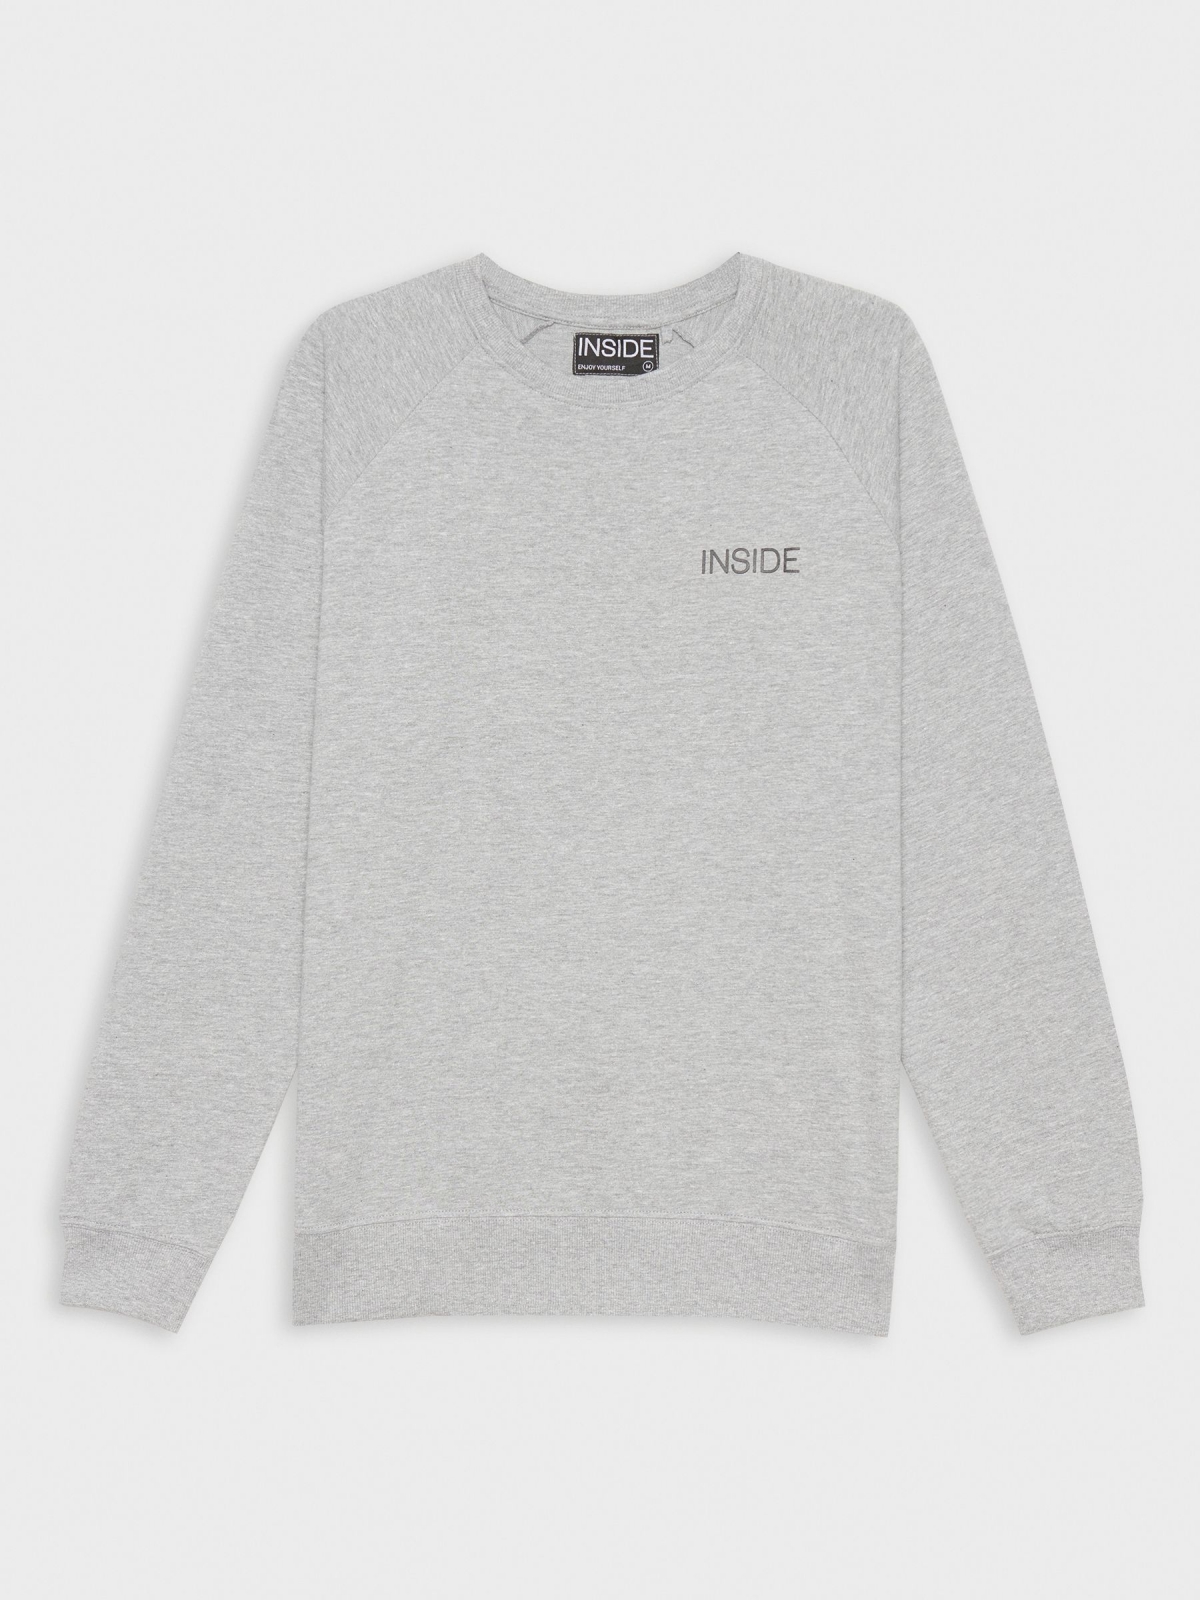  Basic sweatshirt with text melange grey